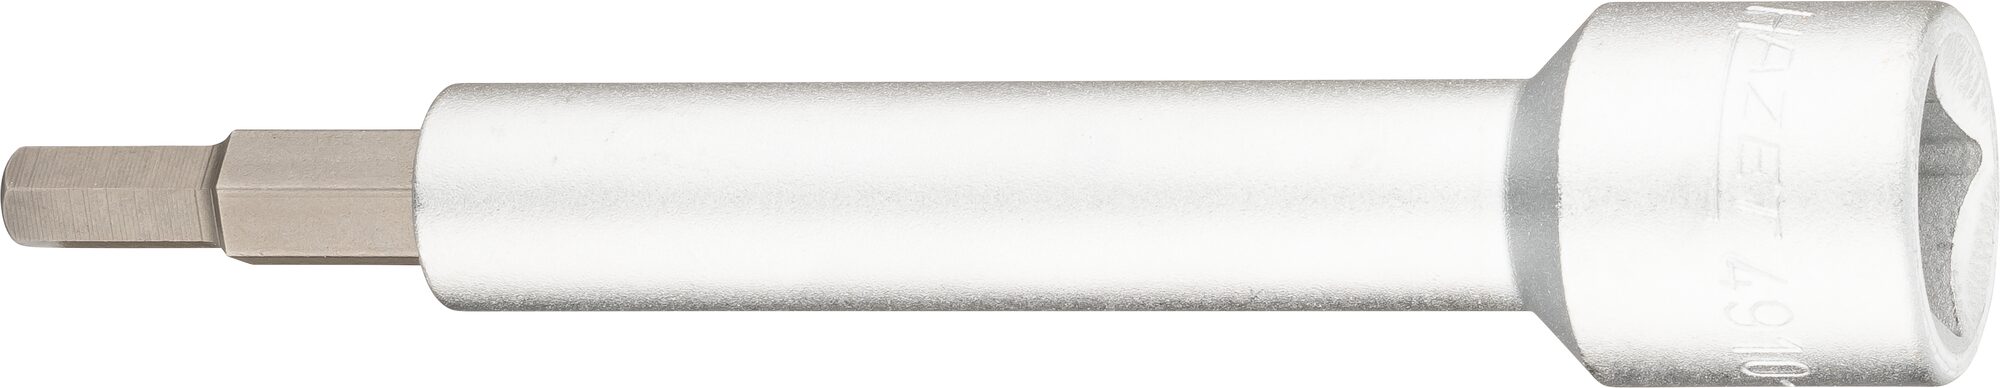 HAZET Verlängerung 4910-6 · Vierkant hohl 12,5 mm (1/2 Zoll) · Innen Sechskant Profil · 6 mm